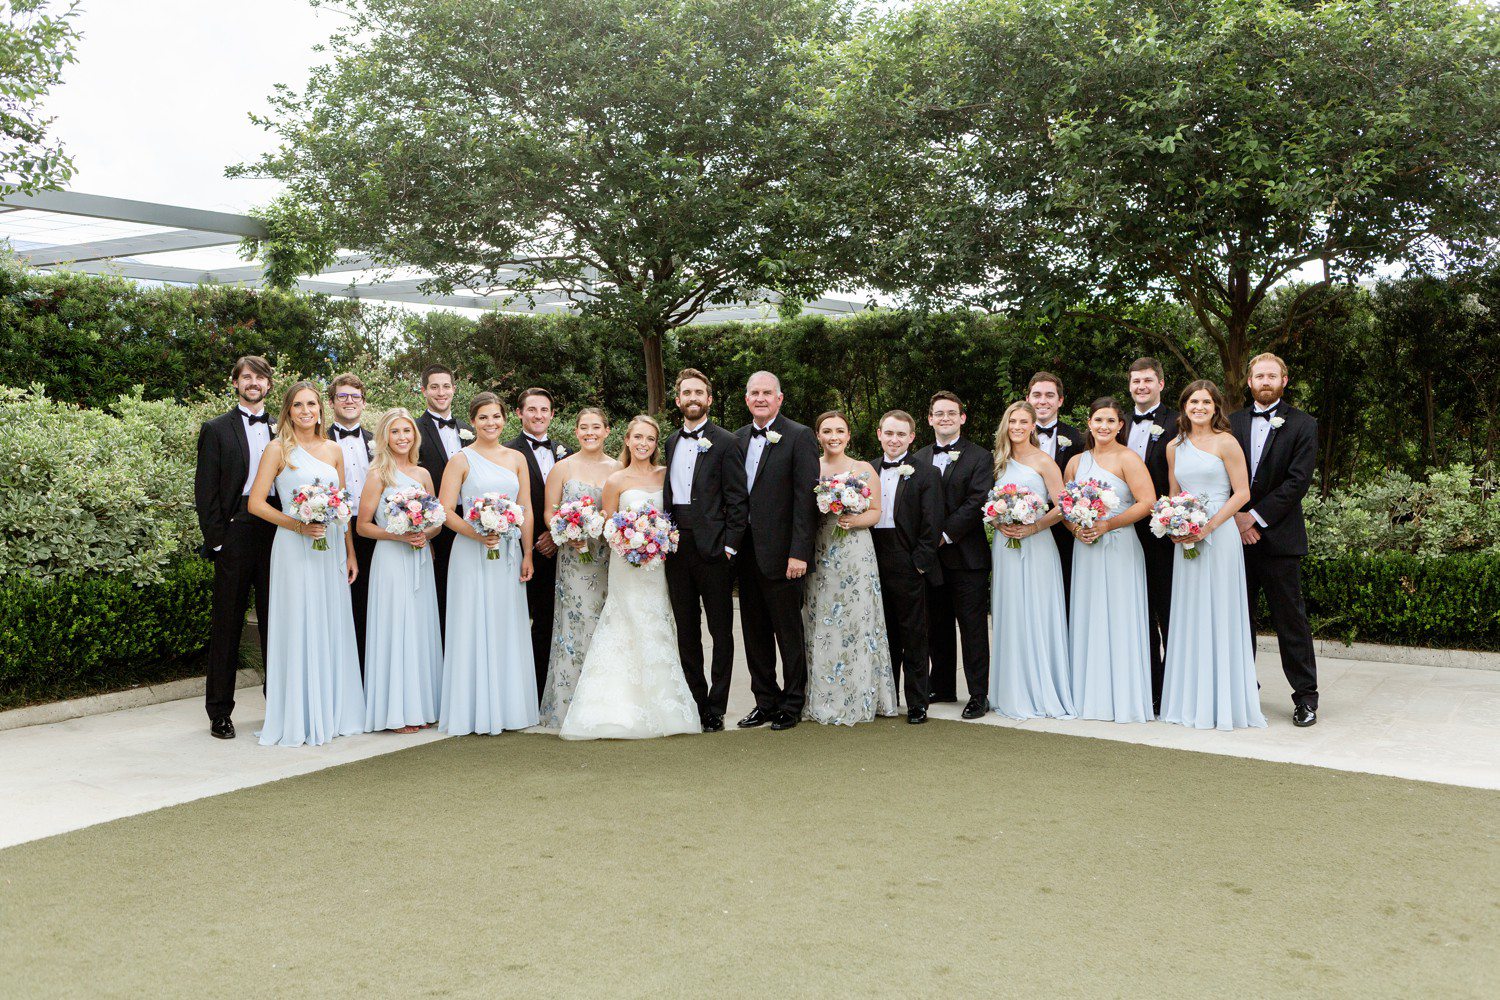 Wedding party photos at Centennial Gardens in Houston. 